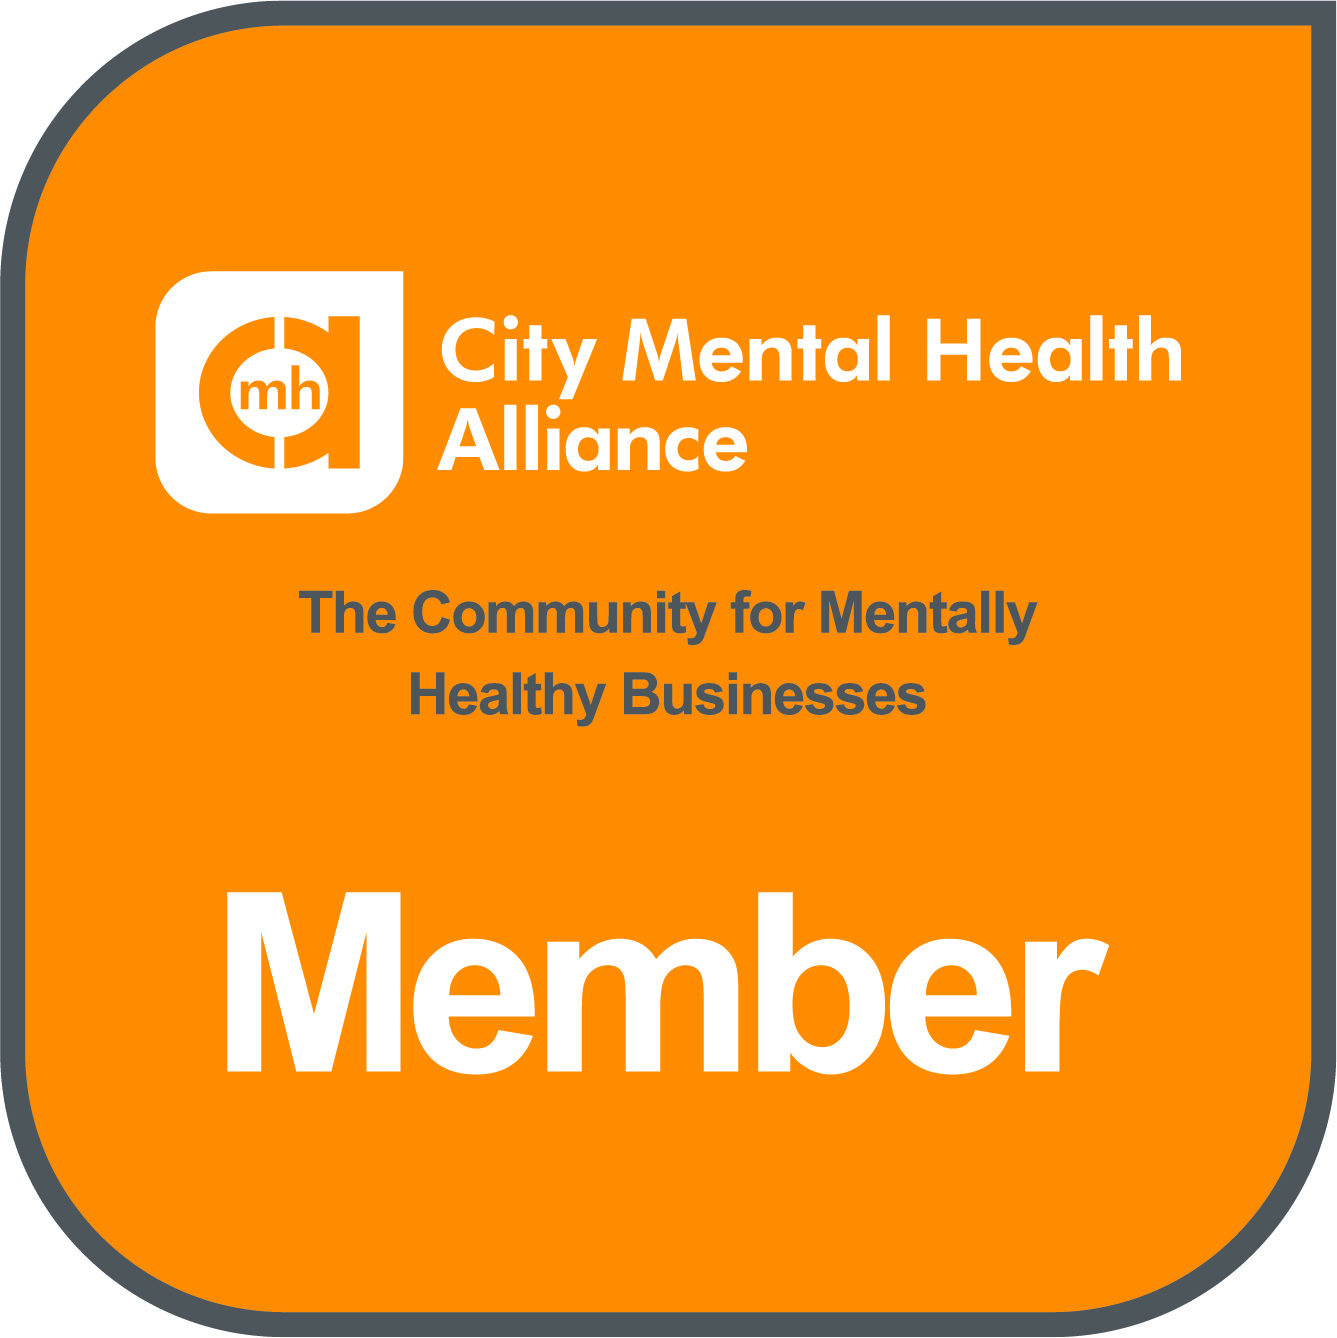 City Mental Health Alliance member logo